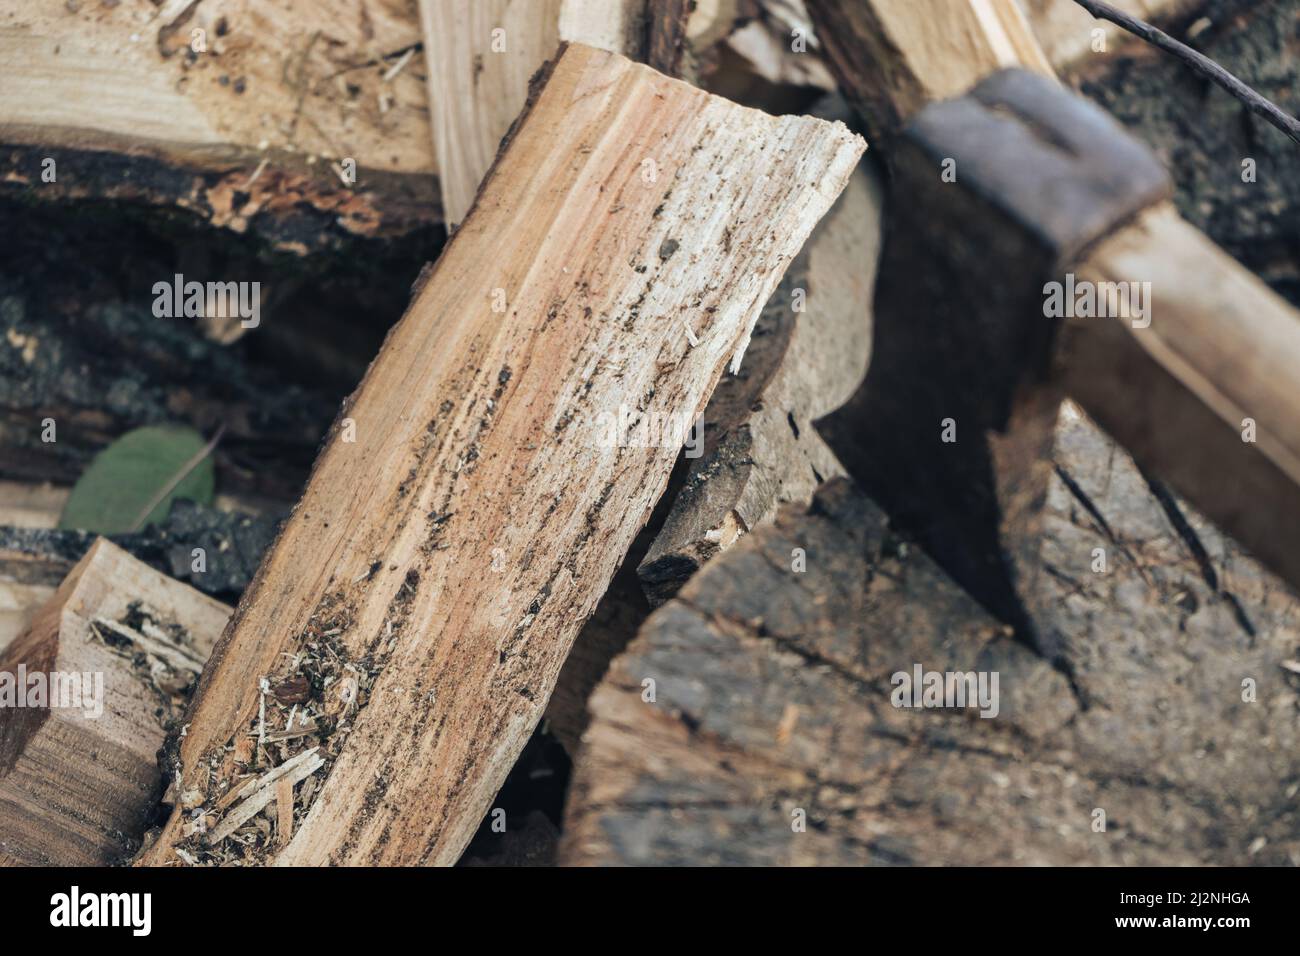 Bella una vecchia ascia con un manico di legno si trova su una pila di legna da ardere, vista dall'alto da vicino Foto Stock